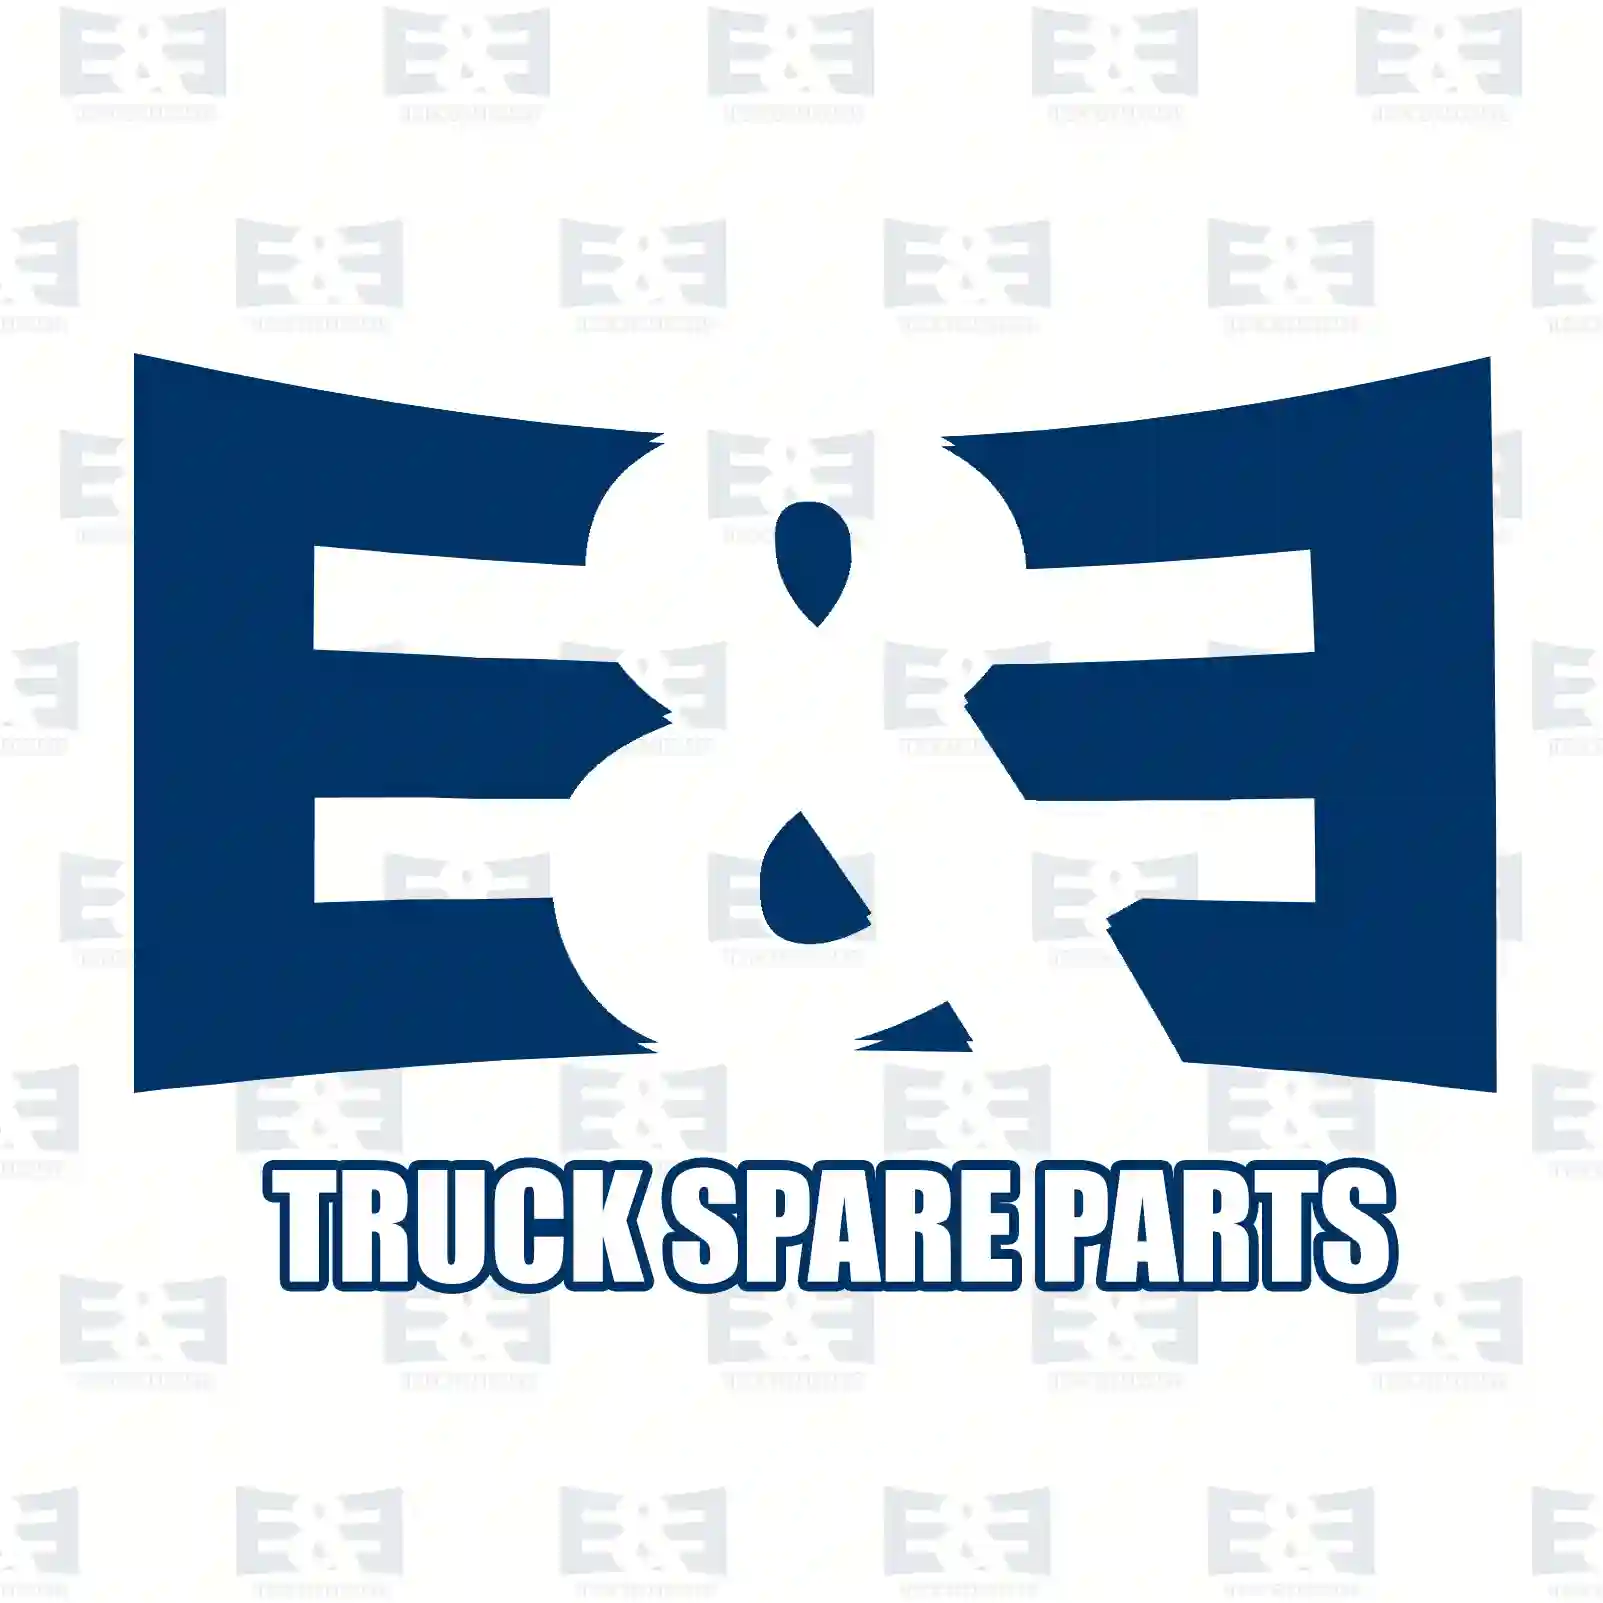 Brake disc, 2E2293928, 02994084, 2994084, , , , , , , ||  2E2293928 E&E Truck Spare Parts | Truck Spare Parts, Auotomotive Spare Parts Brake disc, 2E2293928, 02994084, 2994084, , , , , , , ||  2E2293928 E&E Truck Spare Parts | Truck Spare Parts, Auotomotive Spare Parts